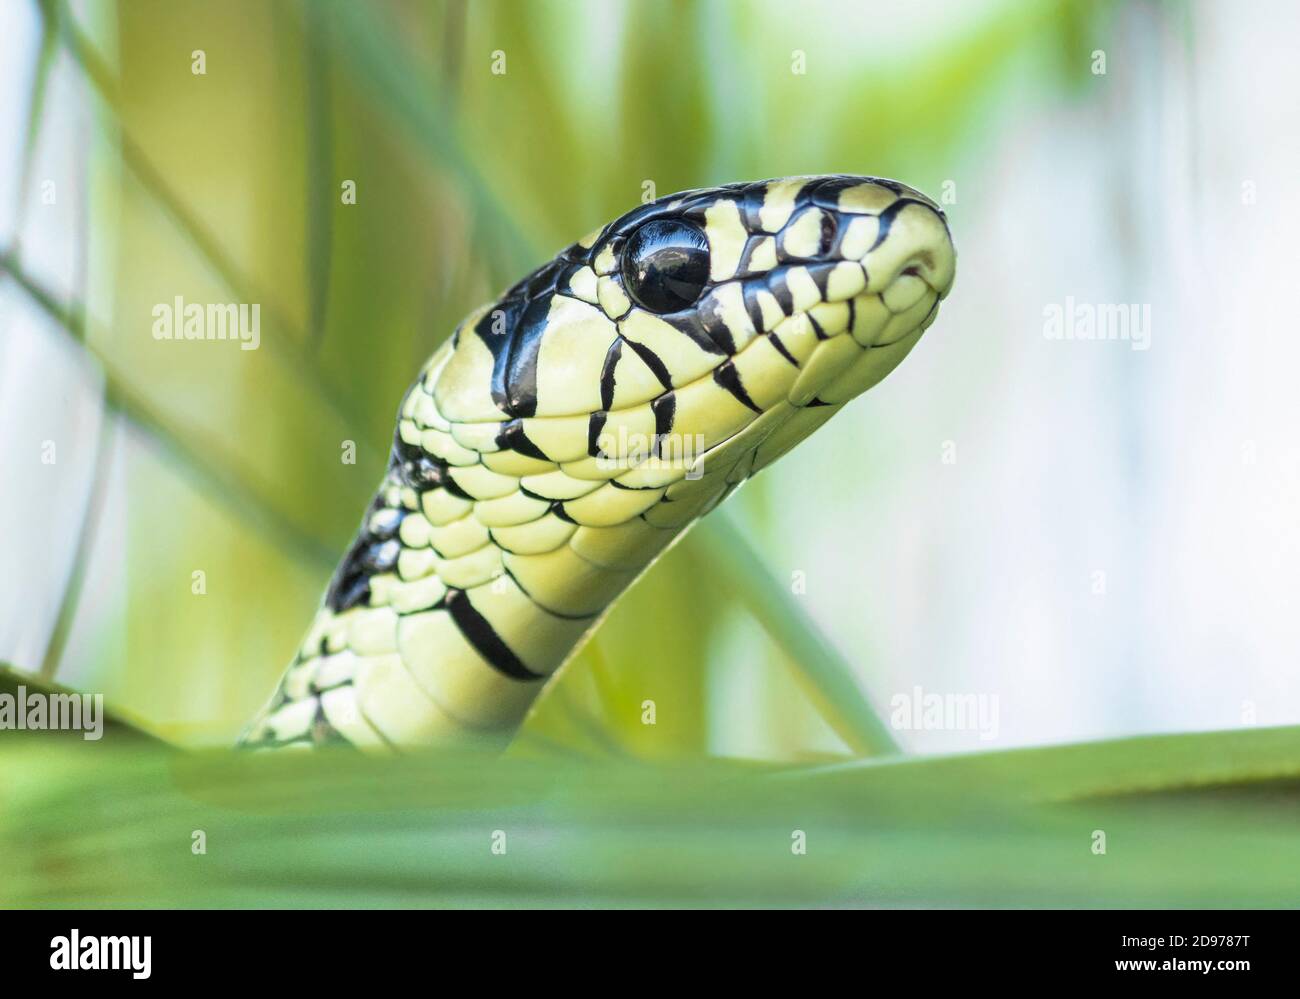 Retrato de la serpiente tigre (Spilotes pullatus) en el Parque Nacional Cañón del Sumidero, Chiapas.México. Foto de stock